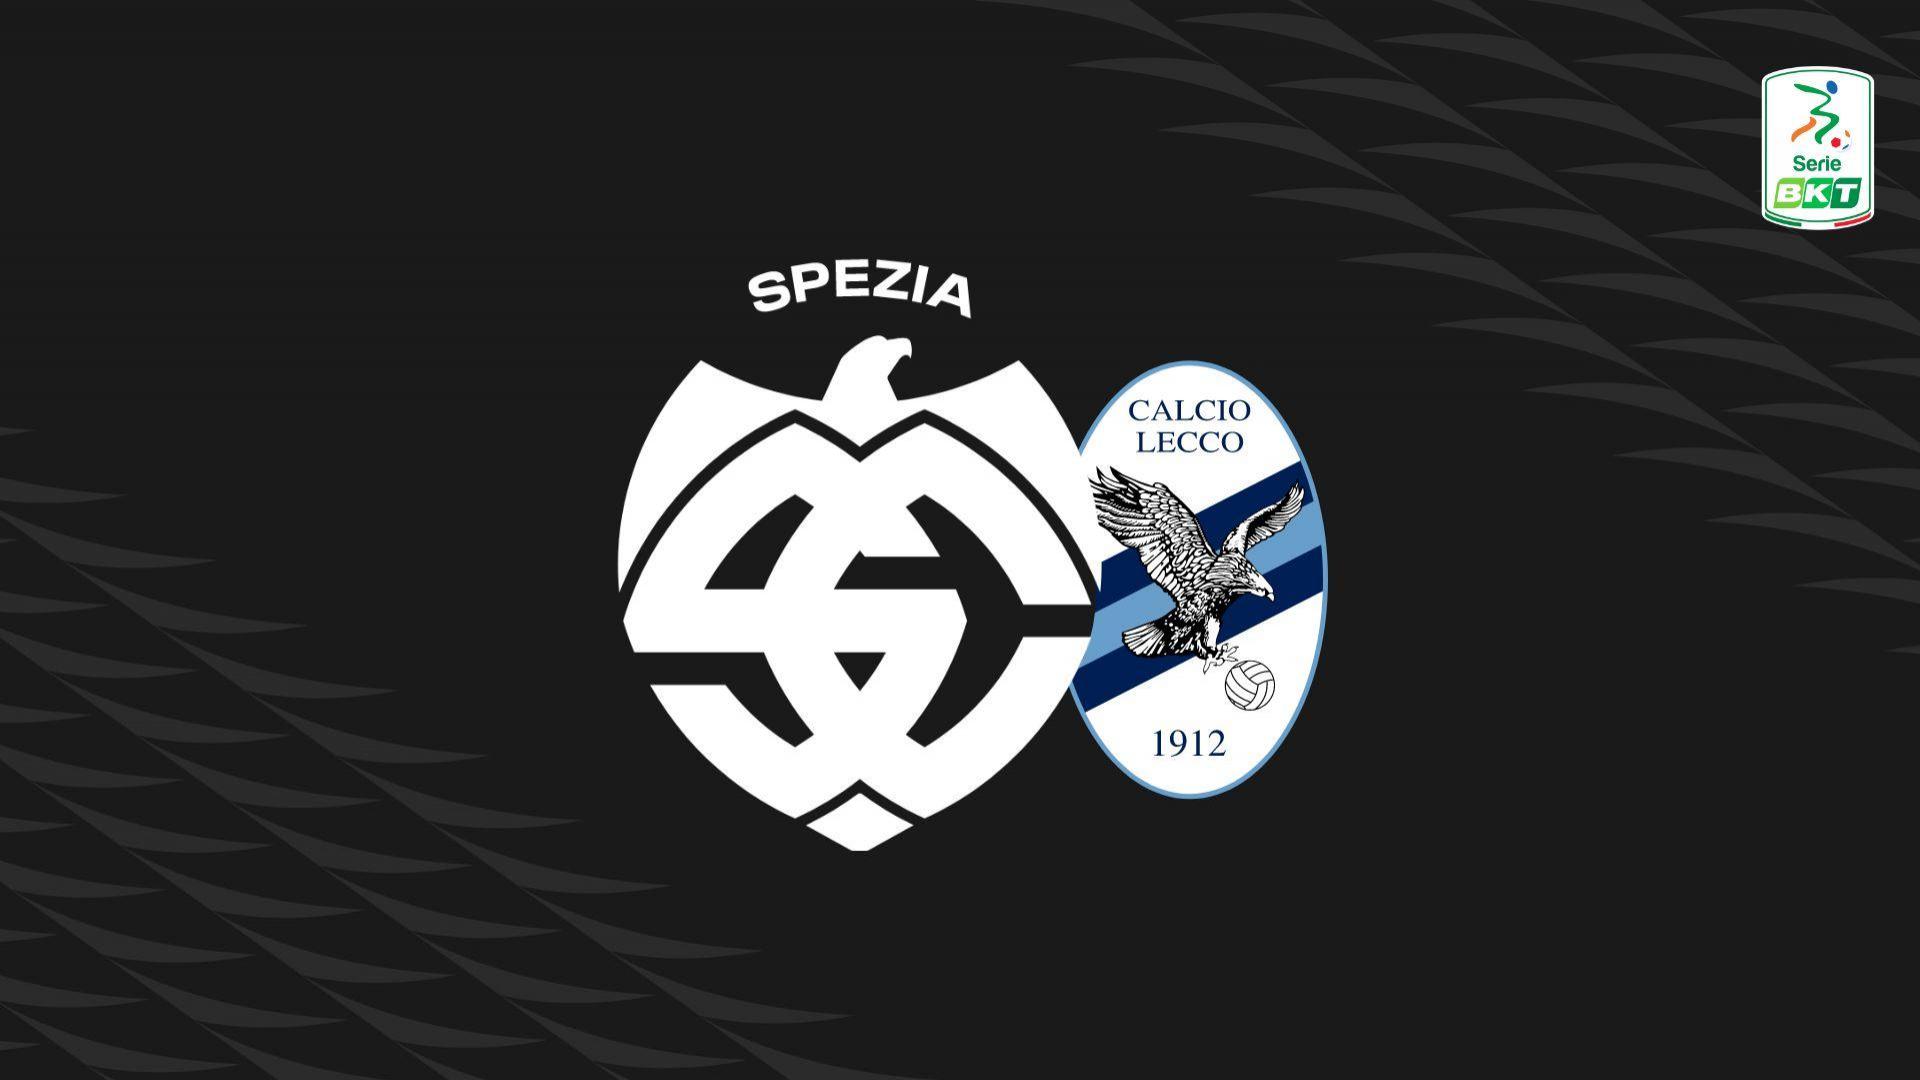 Serie BKT: Spezia-Lecco 1-1